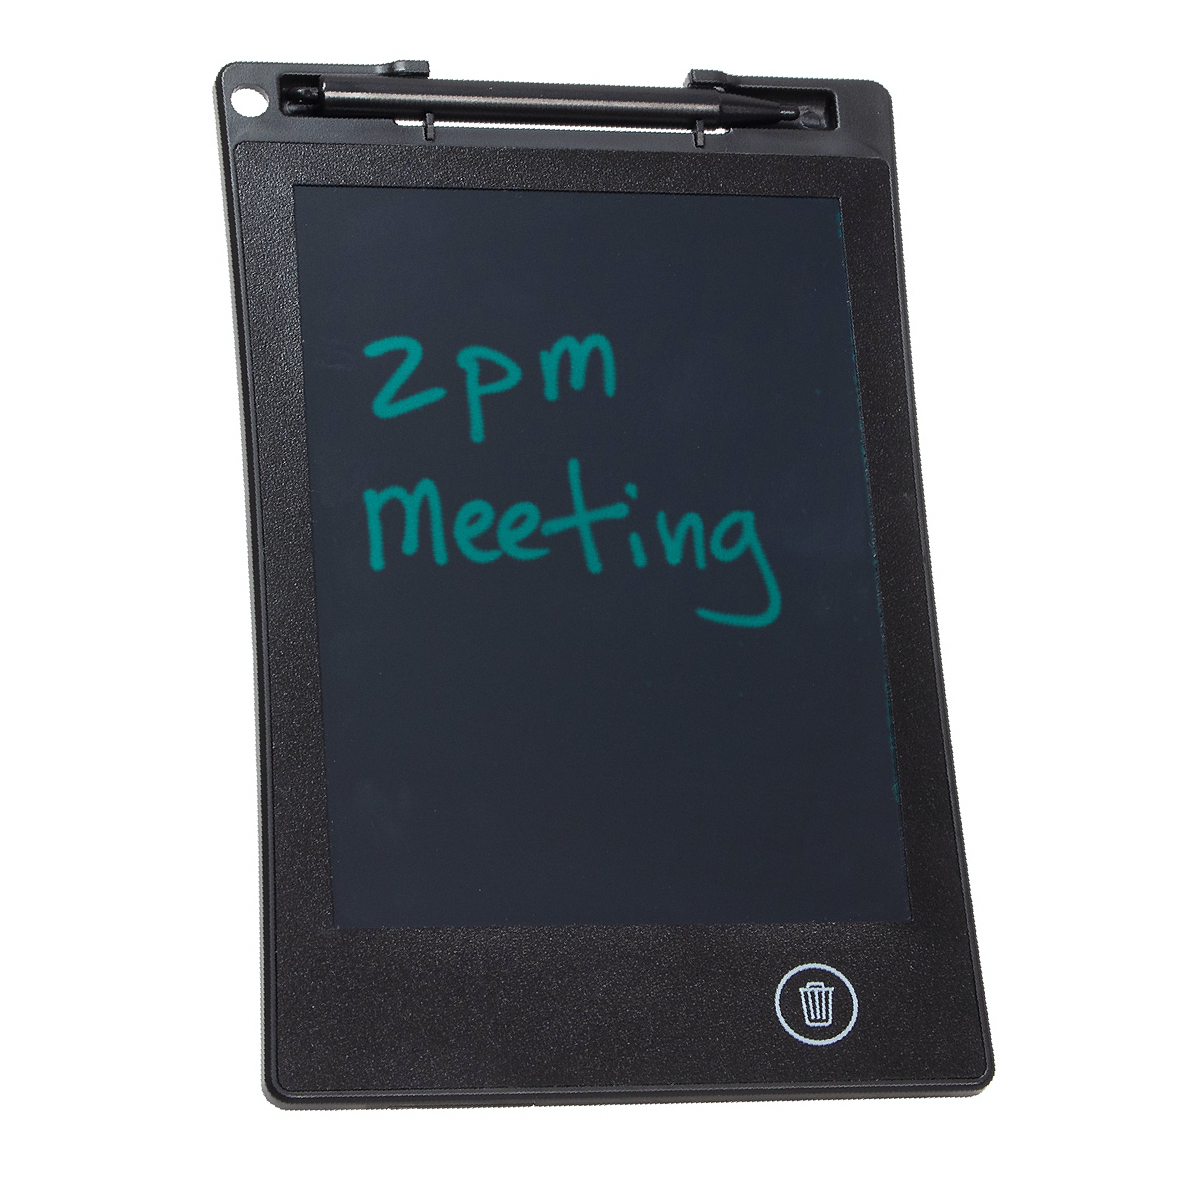 Black 6.5" LCD Memo Board